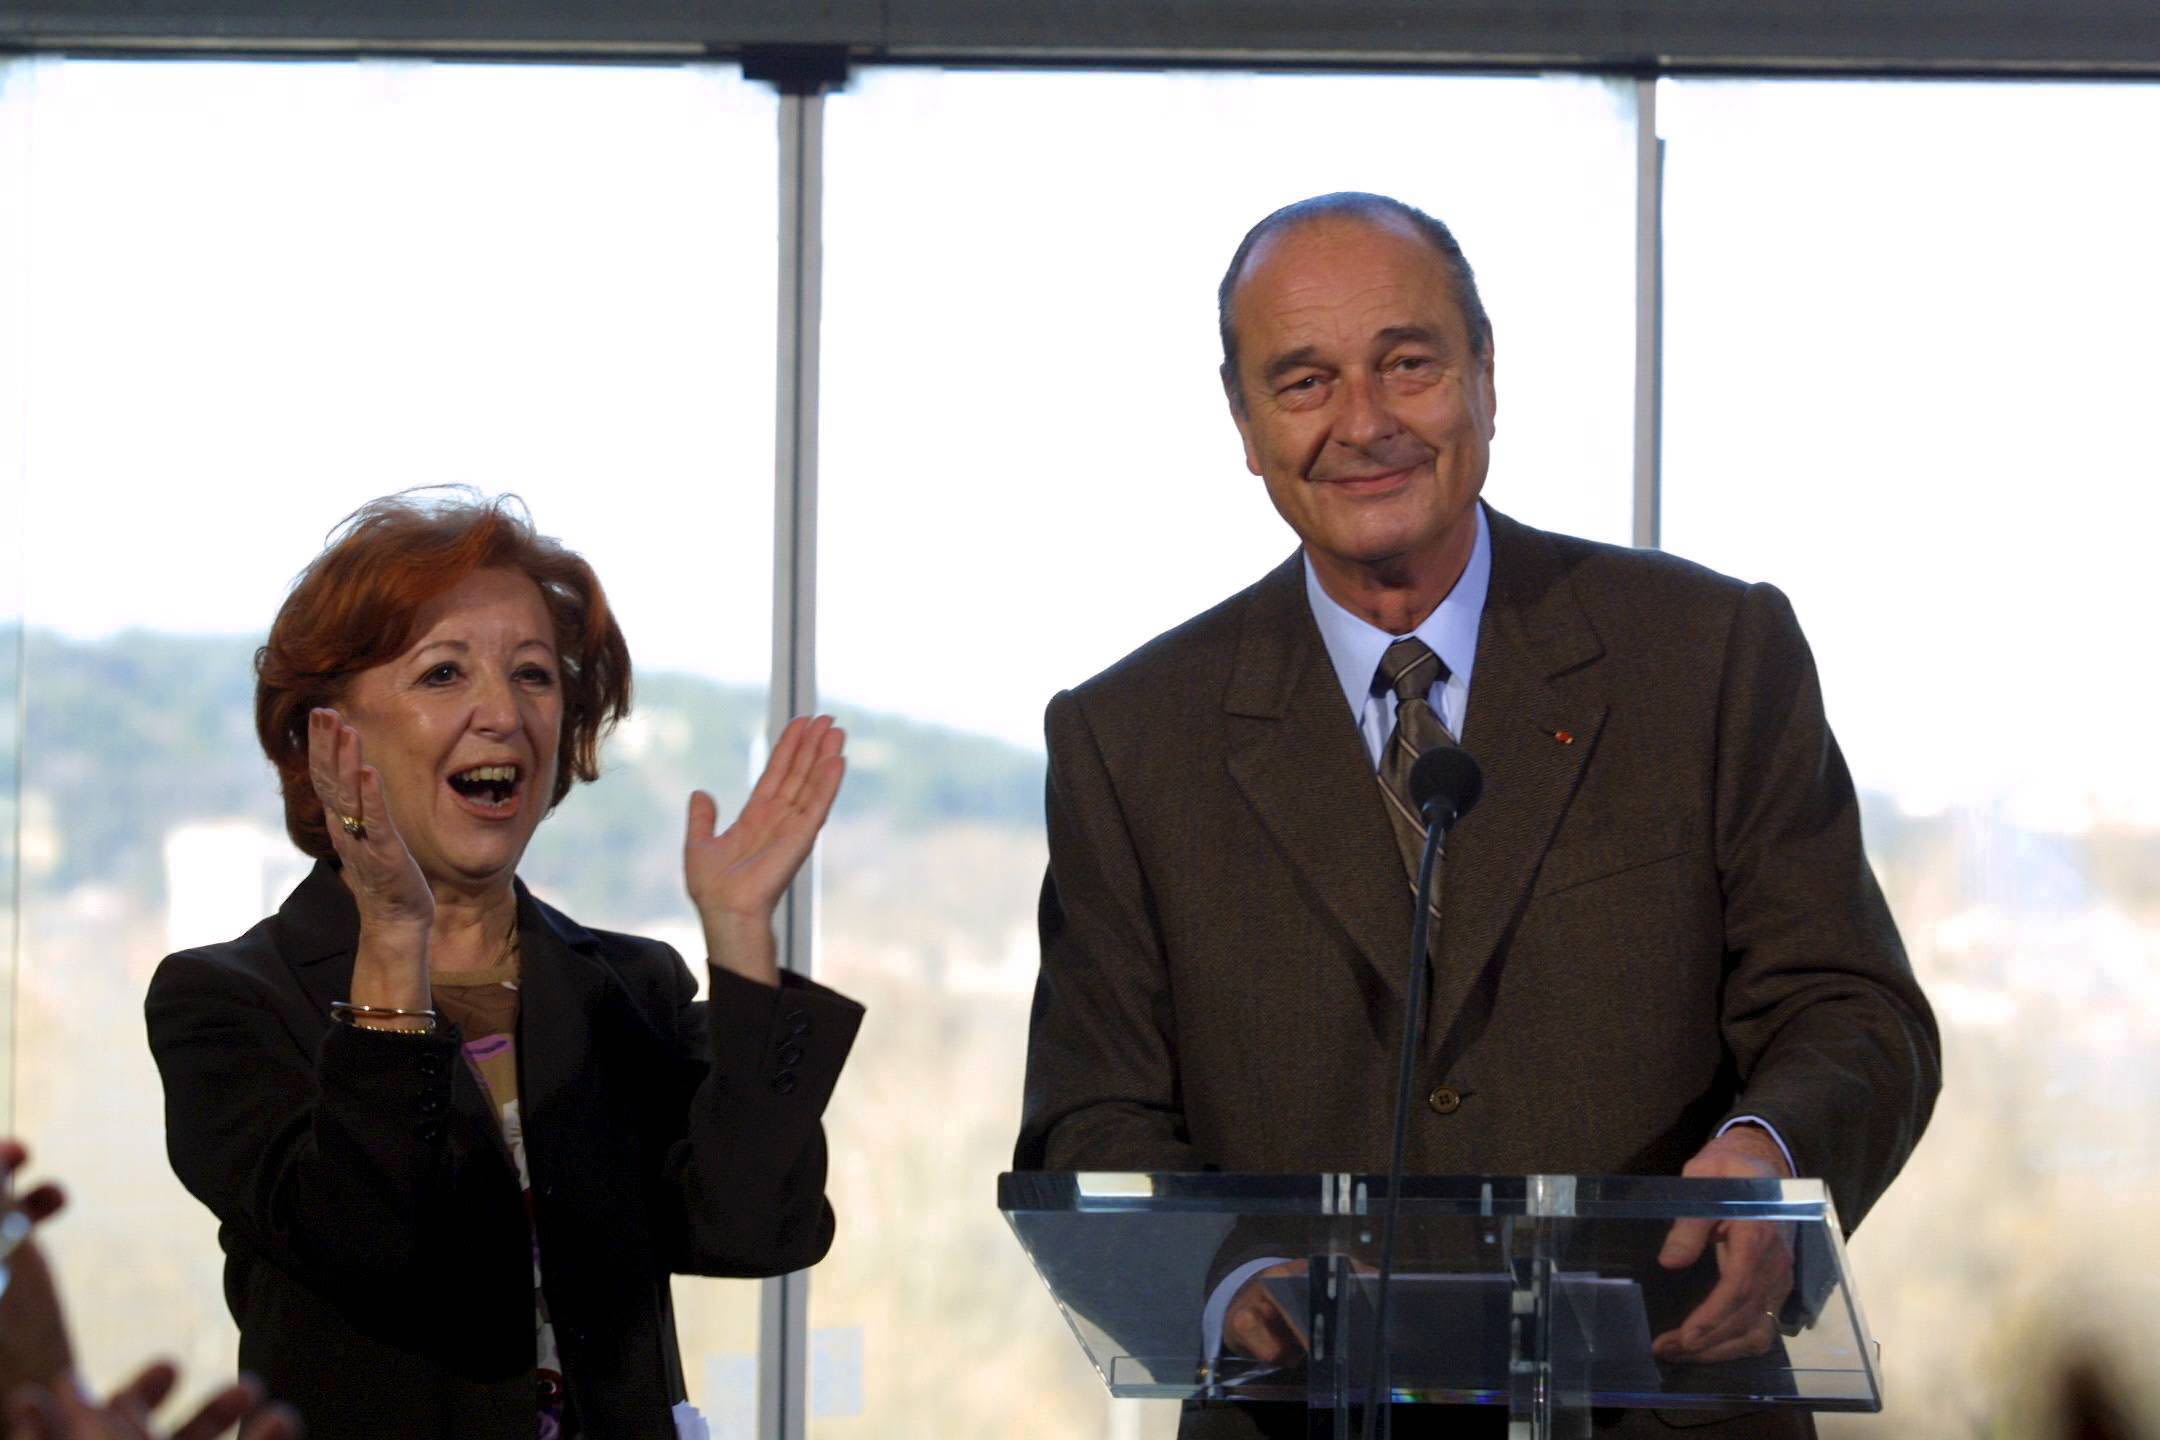 Marie-José Roig et Jacques Chirac, le 11 février 2022 à Avignon / Photo Cyril Hiély